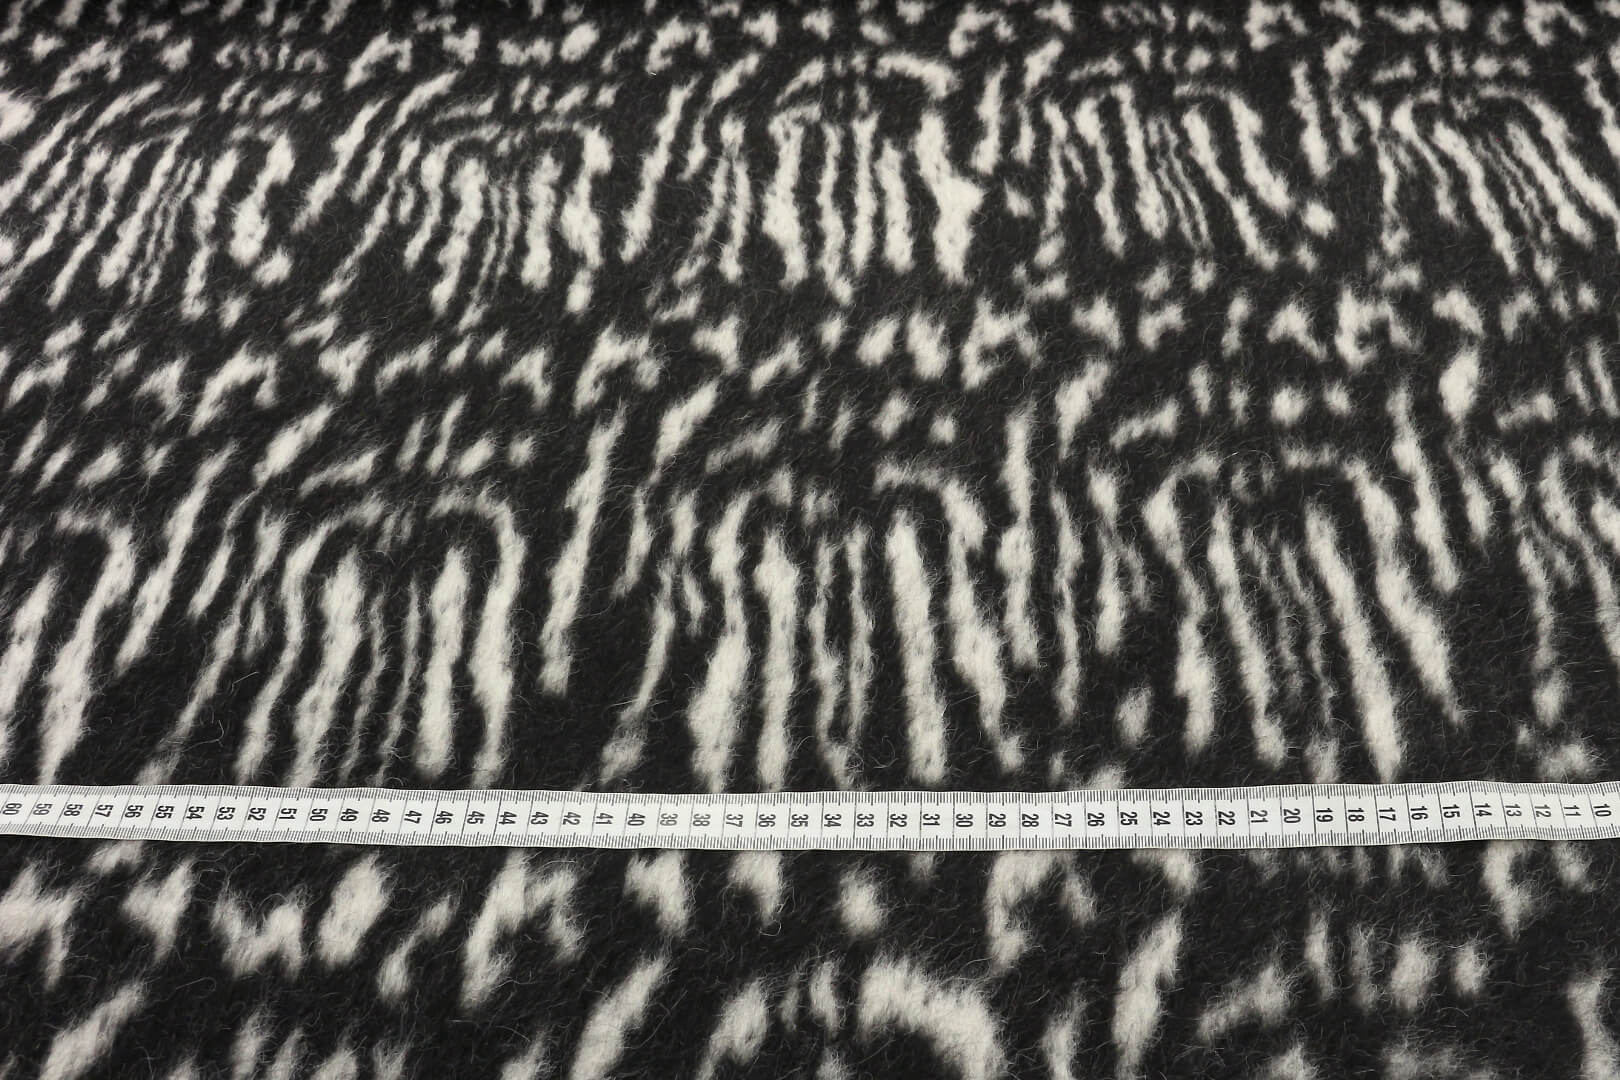 Толстая пальтовка из ламы  PIACENZA, цвет Черно-белый, фото 1